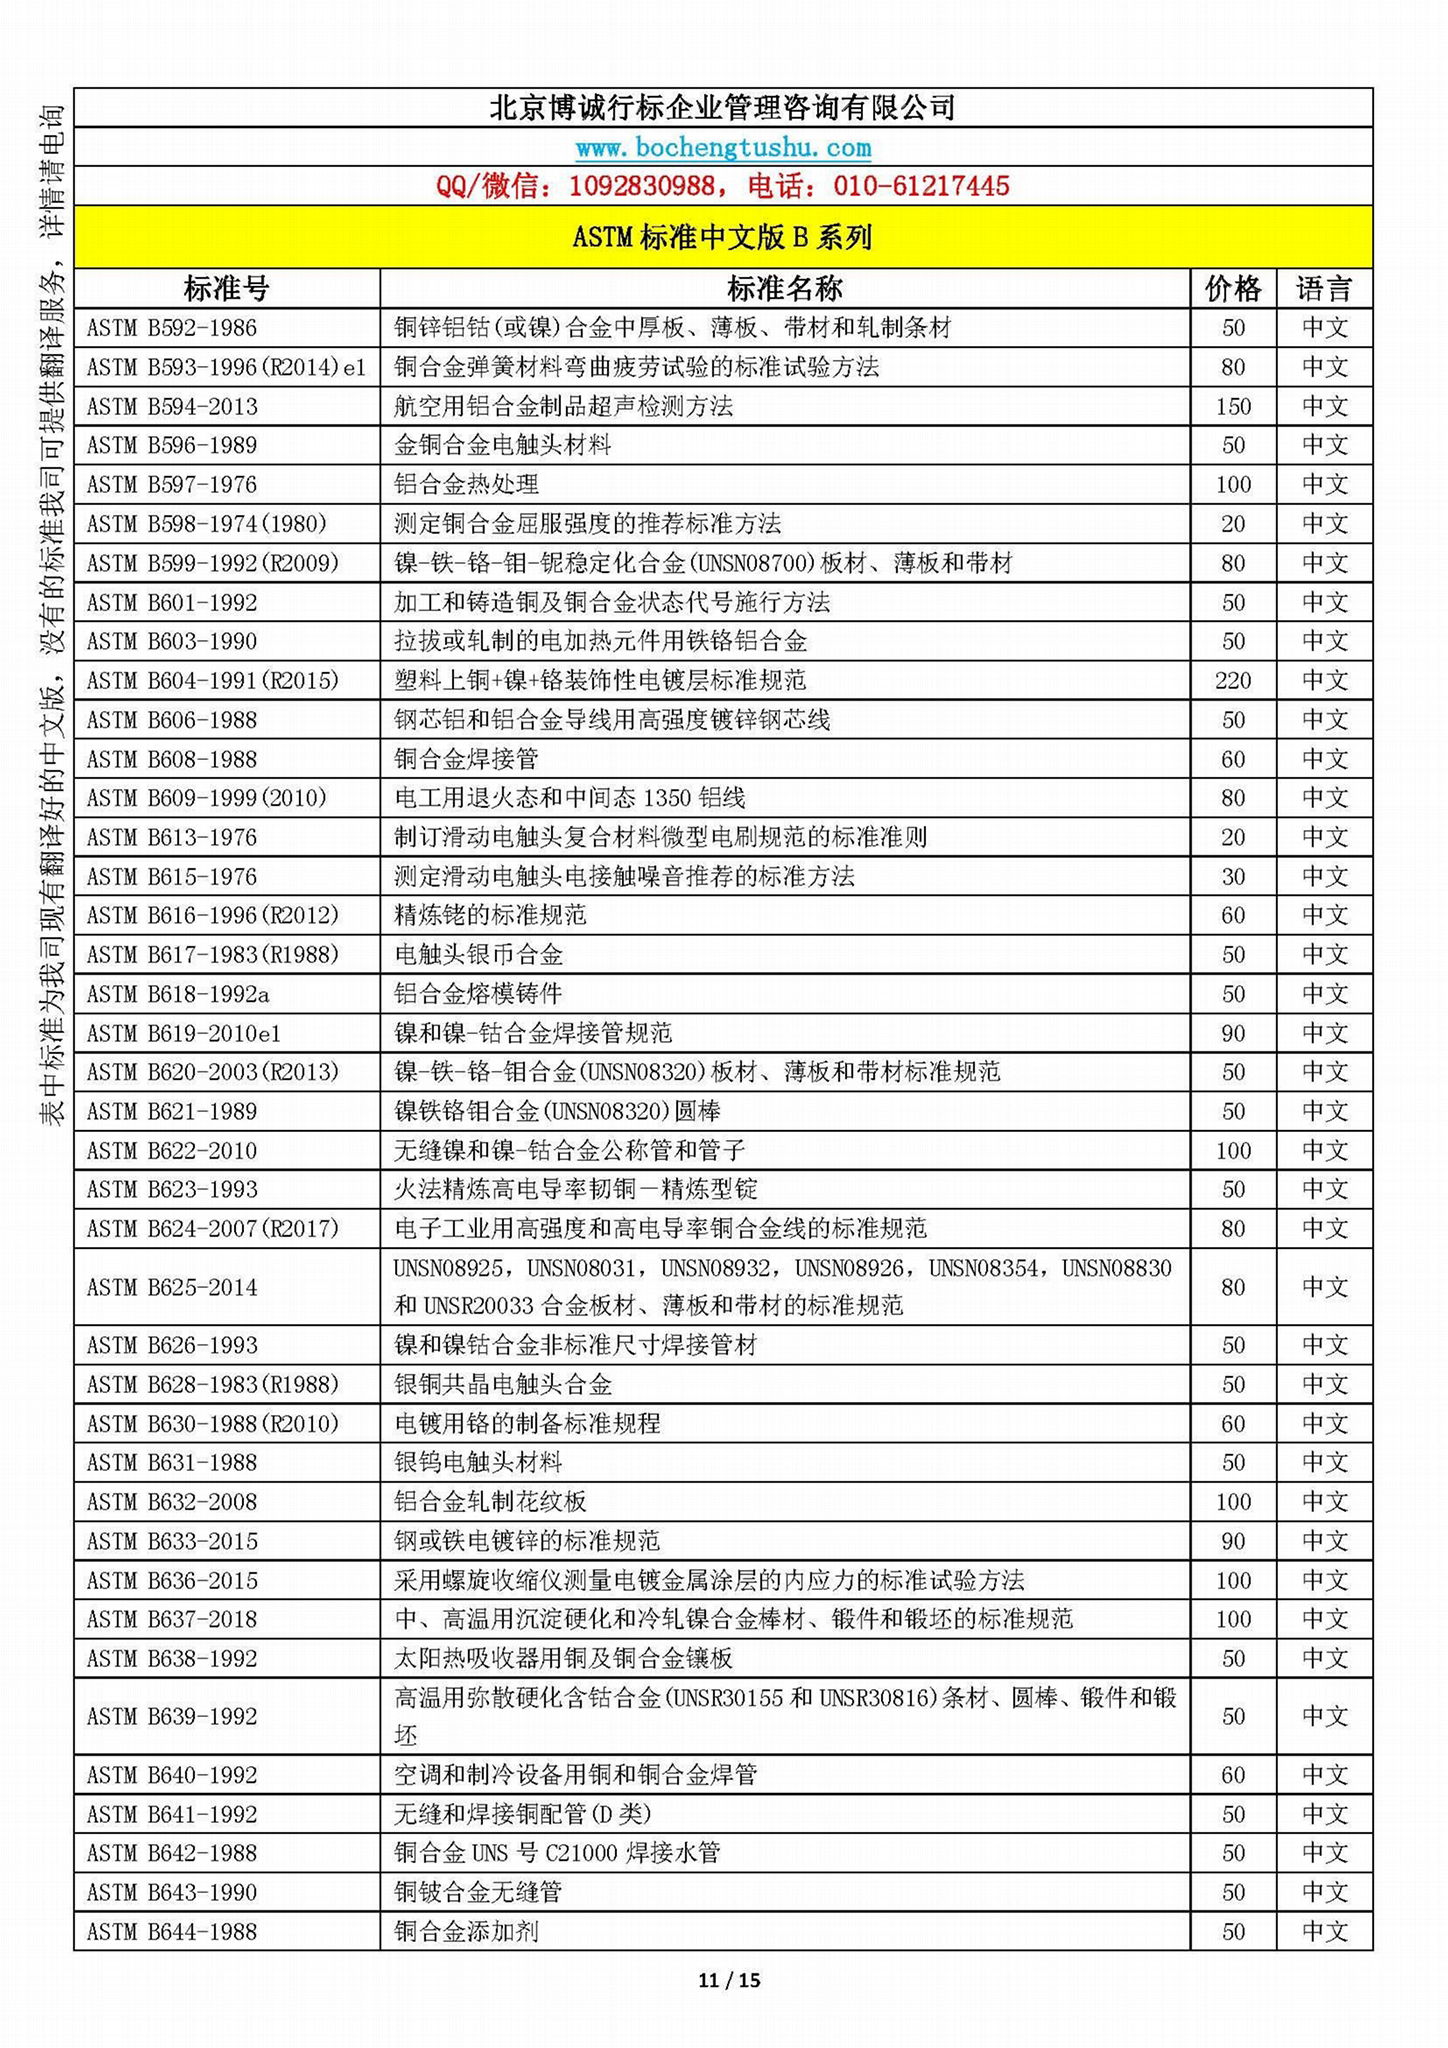 ASTM標準中文版B系列資料 3